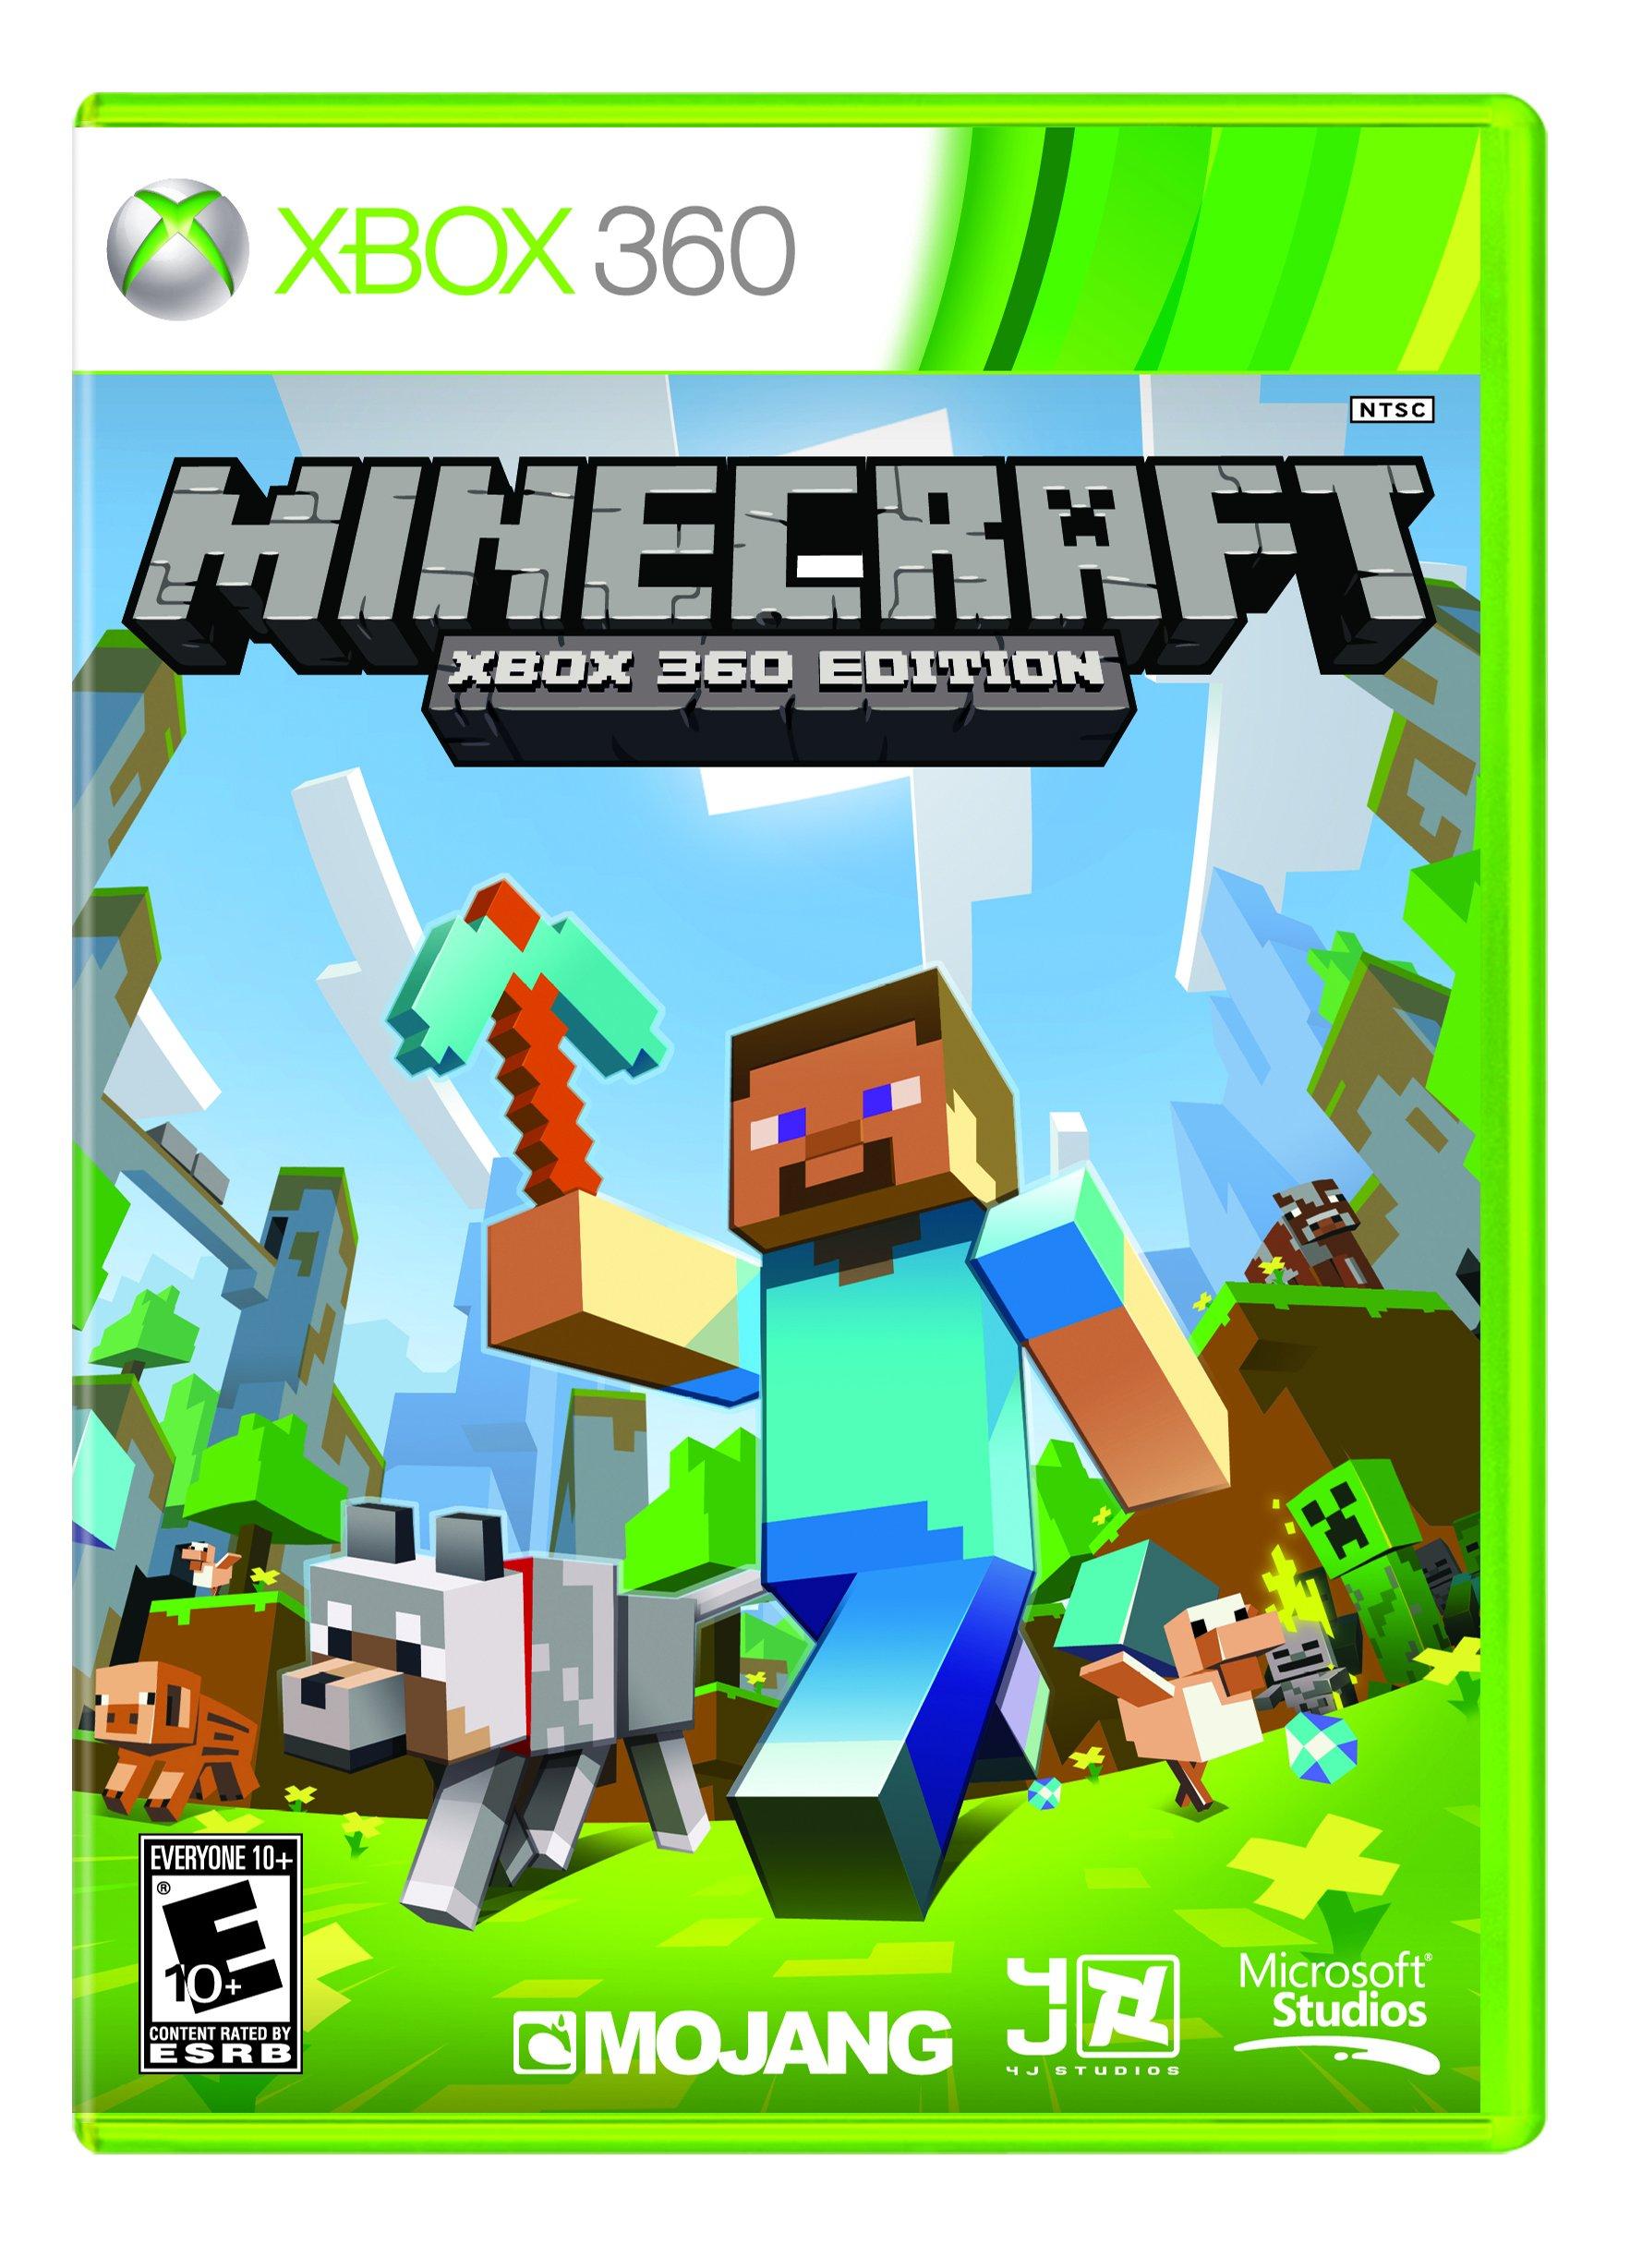 Normalization depth concrete Minecraft: Xbox 360 Edition - Xbox 360 | Xbox 360 | GameStop